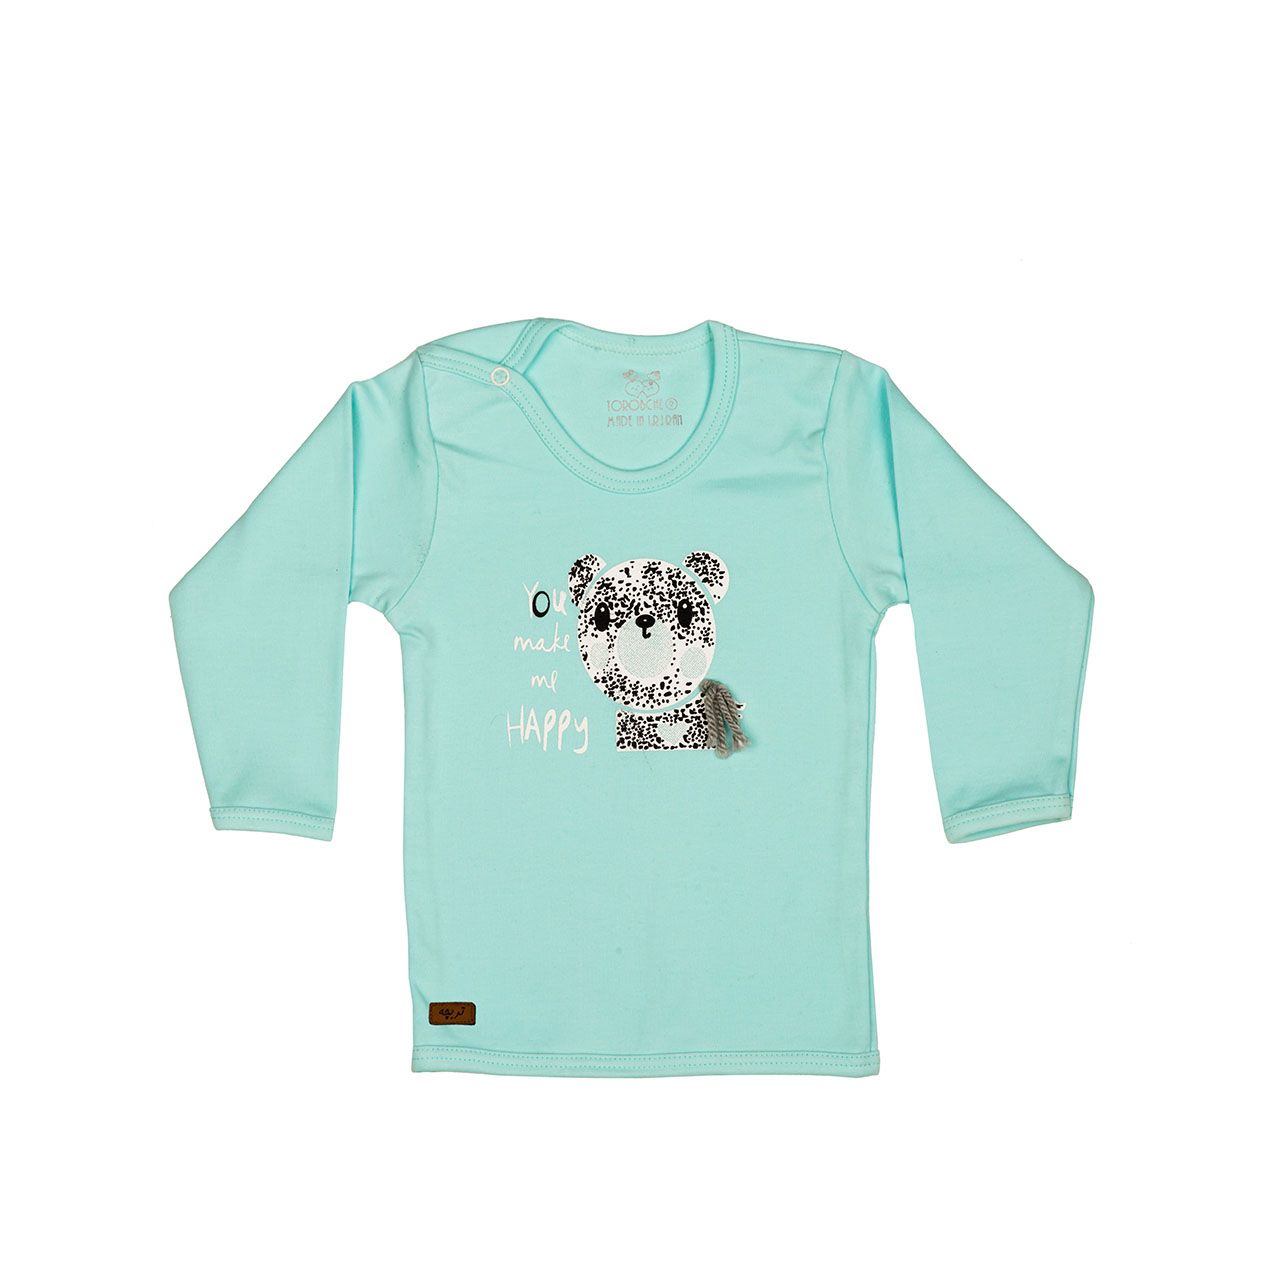 تی شرت آستین بلند نوزادی تربچه مدل خرس -  - 2